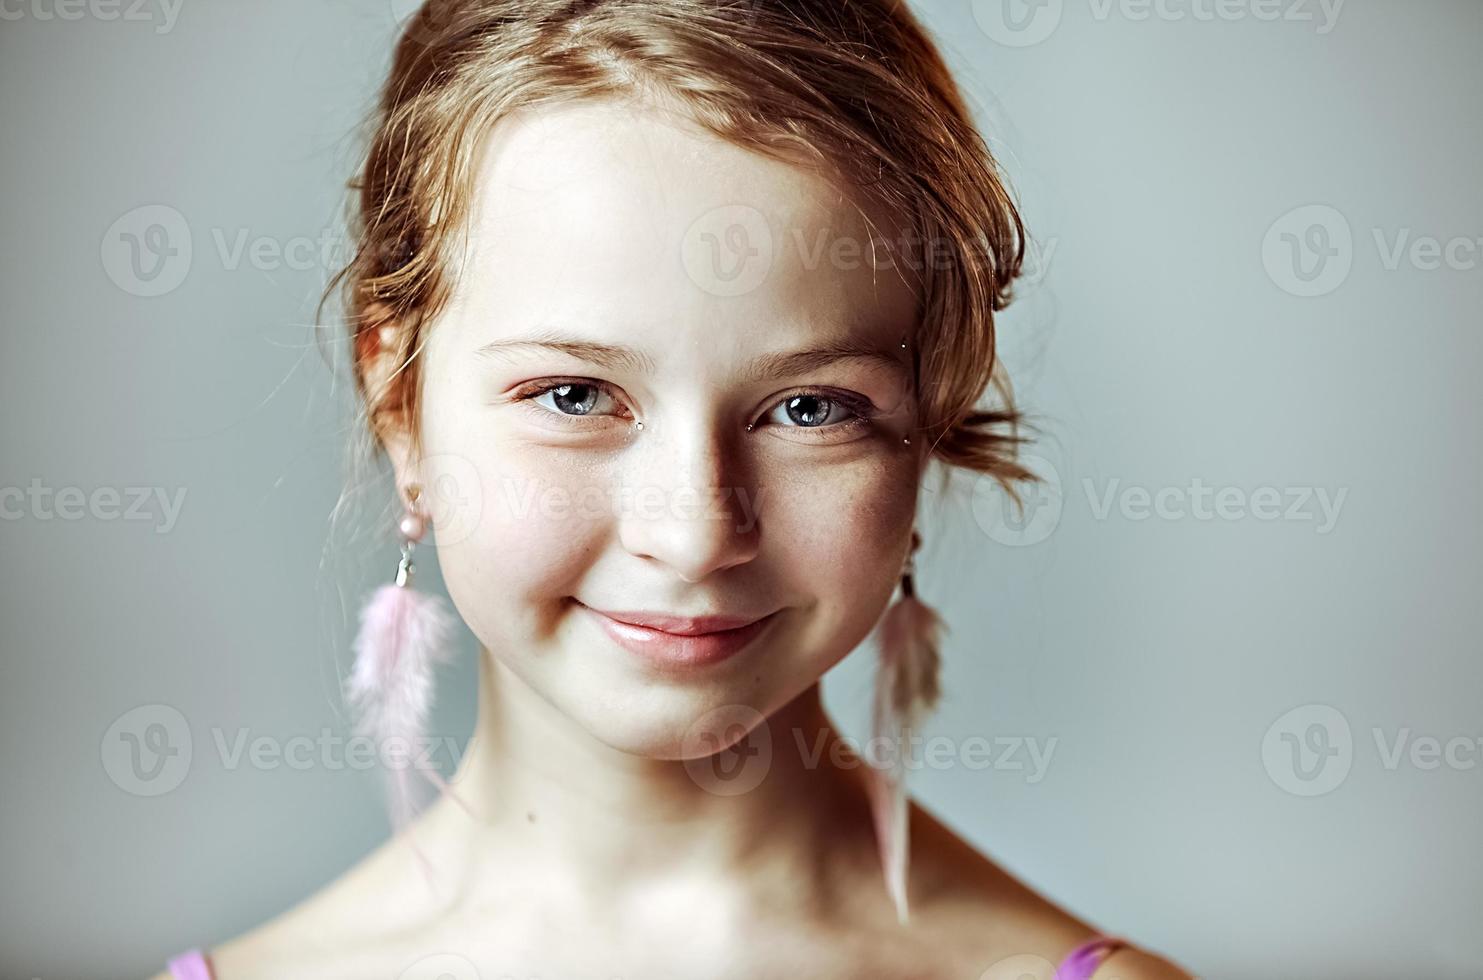 retrato do close-up de uma jovem com maquiagem festiva para uma festa. Dia dos Namorados. brincos-penas nas orelhas da modelo foto